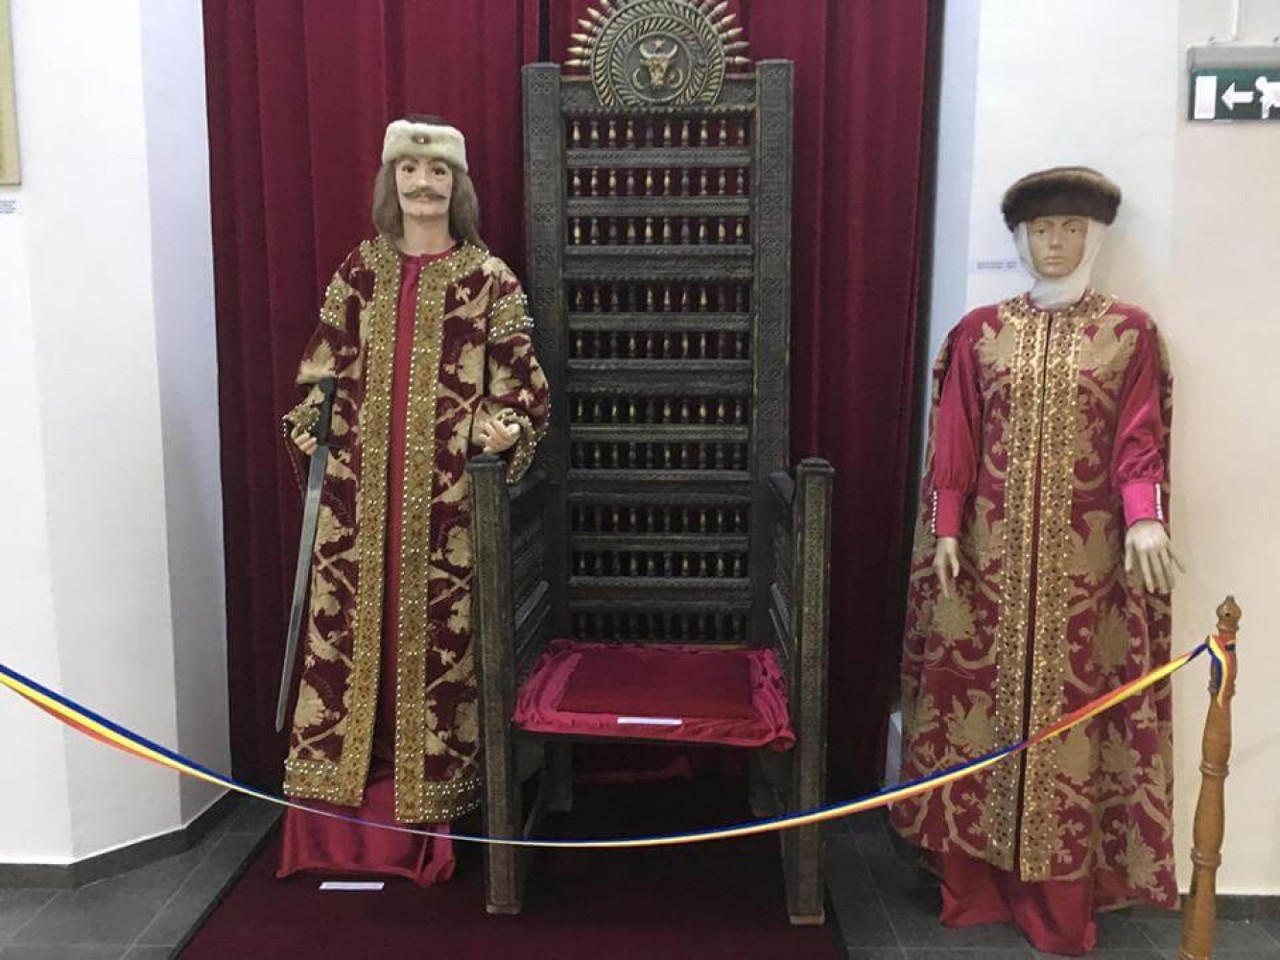 planiada.ro/ Muzeul Județean Ștefan cel Mare din Vaslui